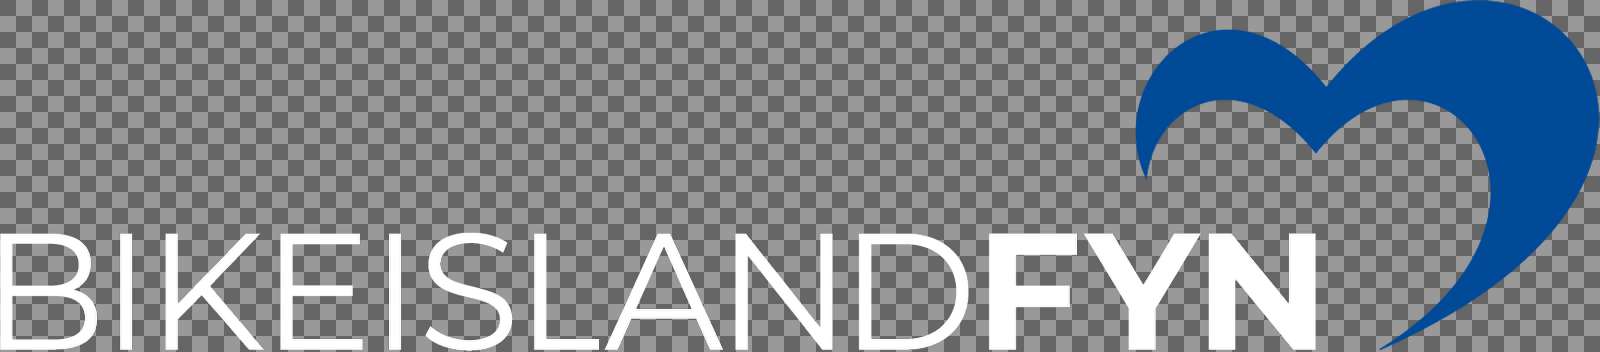 BikeislandFyn logo blaahvid rgb